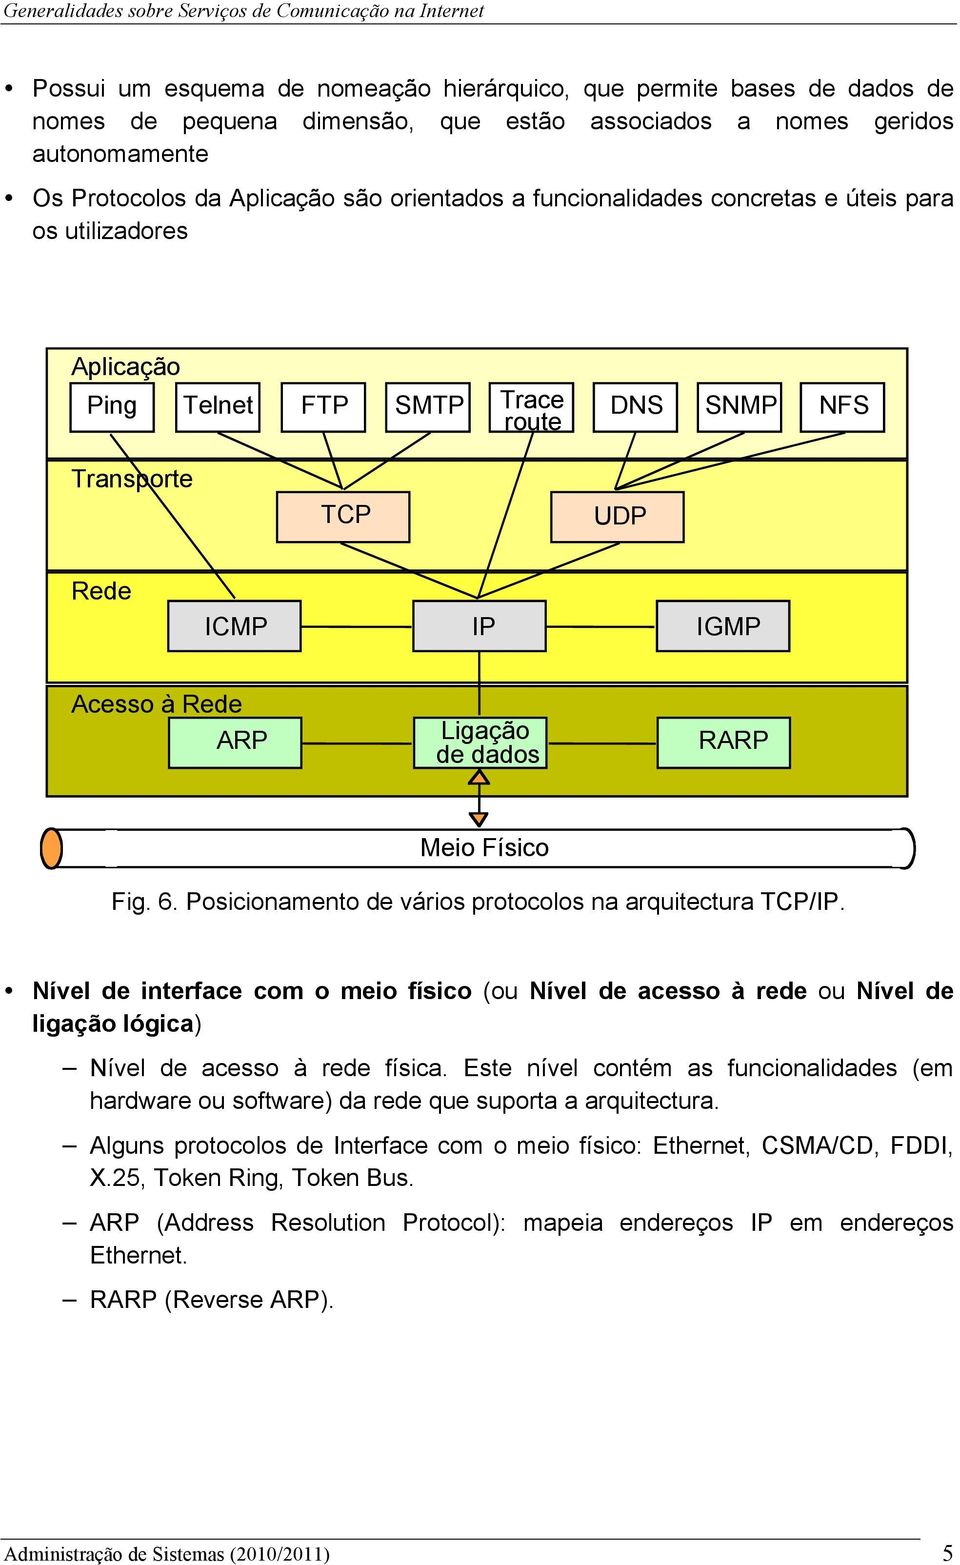 Fig. 6. Posicionamento de vários protocolos na arquitectura TCP/IP. Nível de interface com o meio físico (ou Nível de acesso à rede ou Nível de ligação lógica) Nível de acesso à rede física.